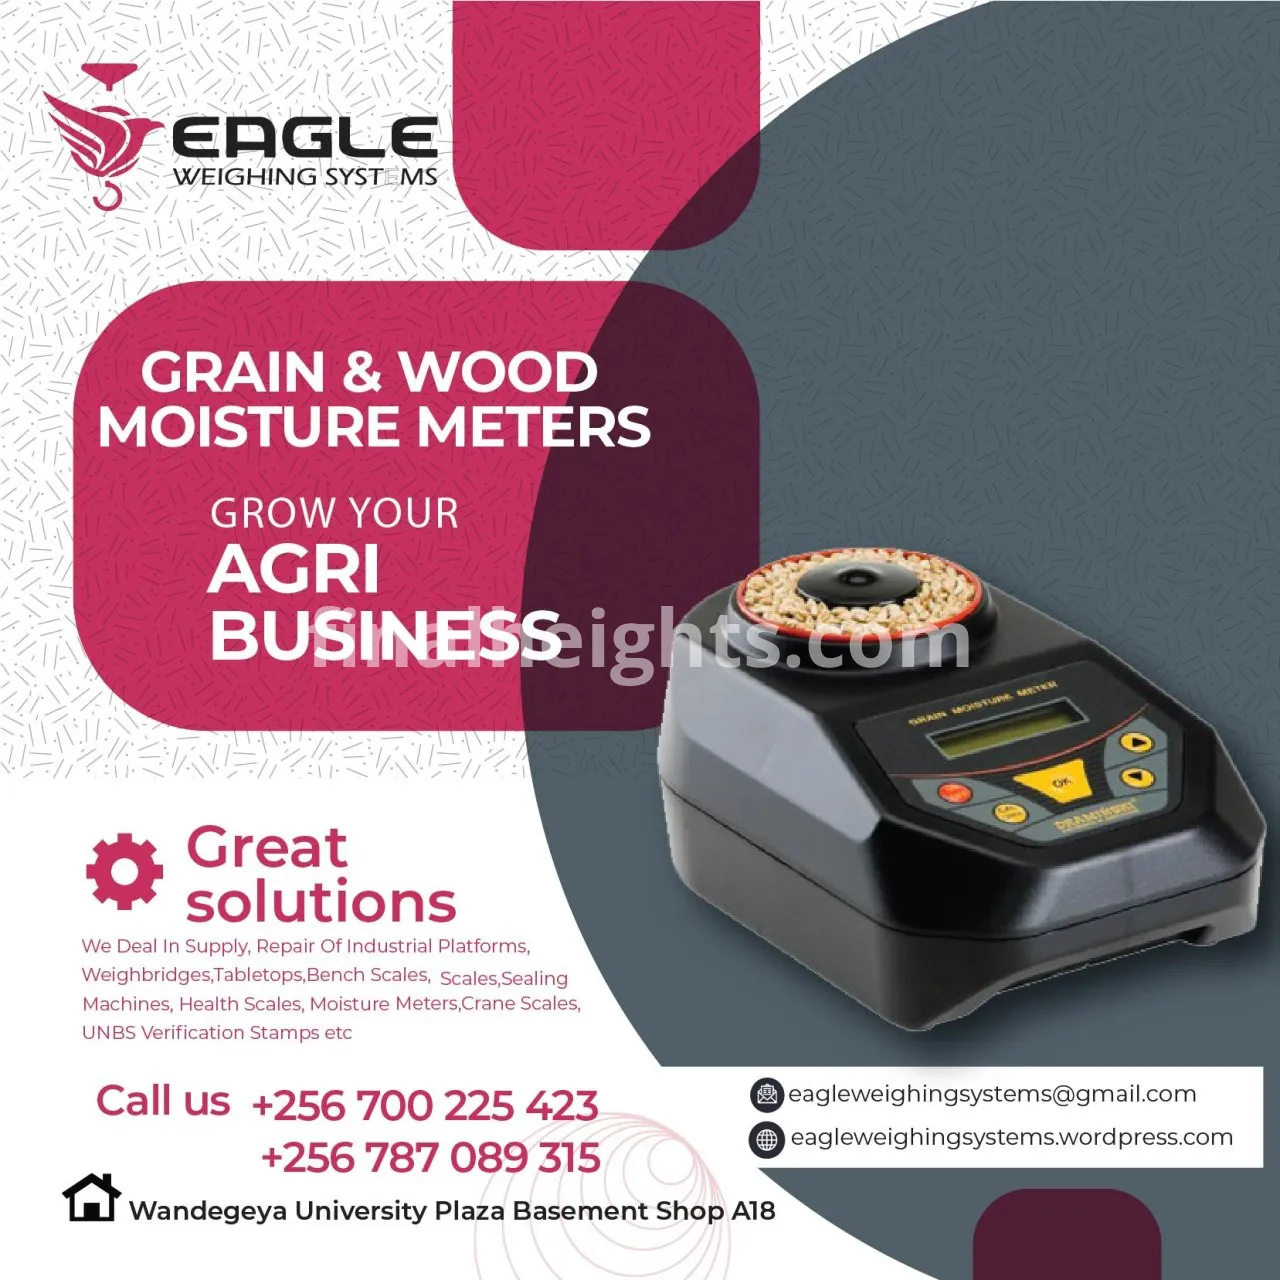 UNBS certified moisture meters in Uganda +256 787089315